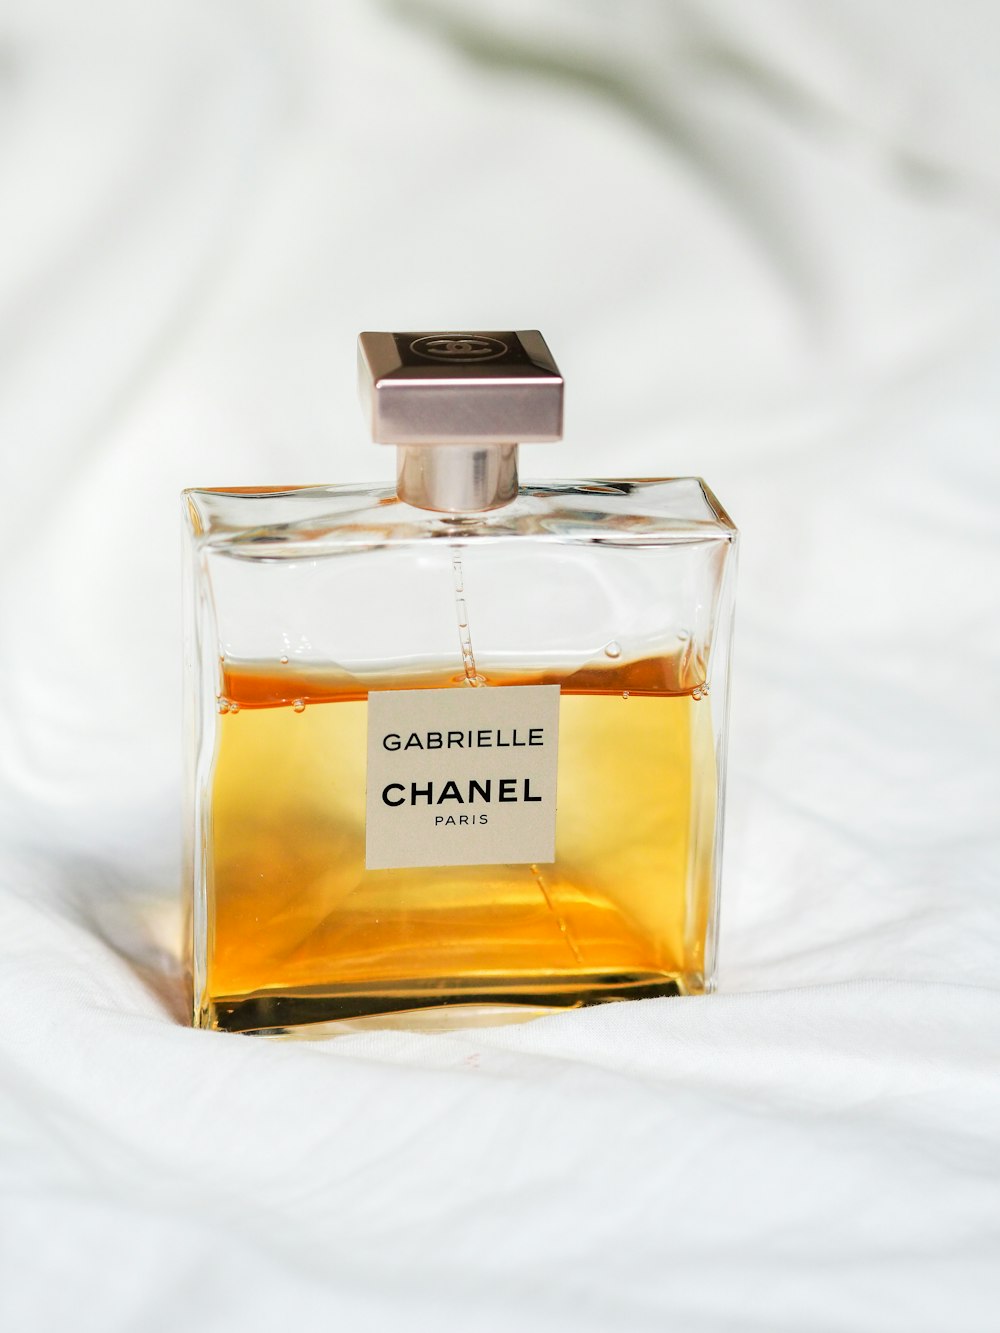 chanel perfume bottle on white textile